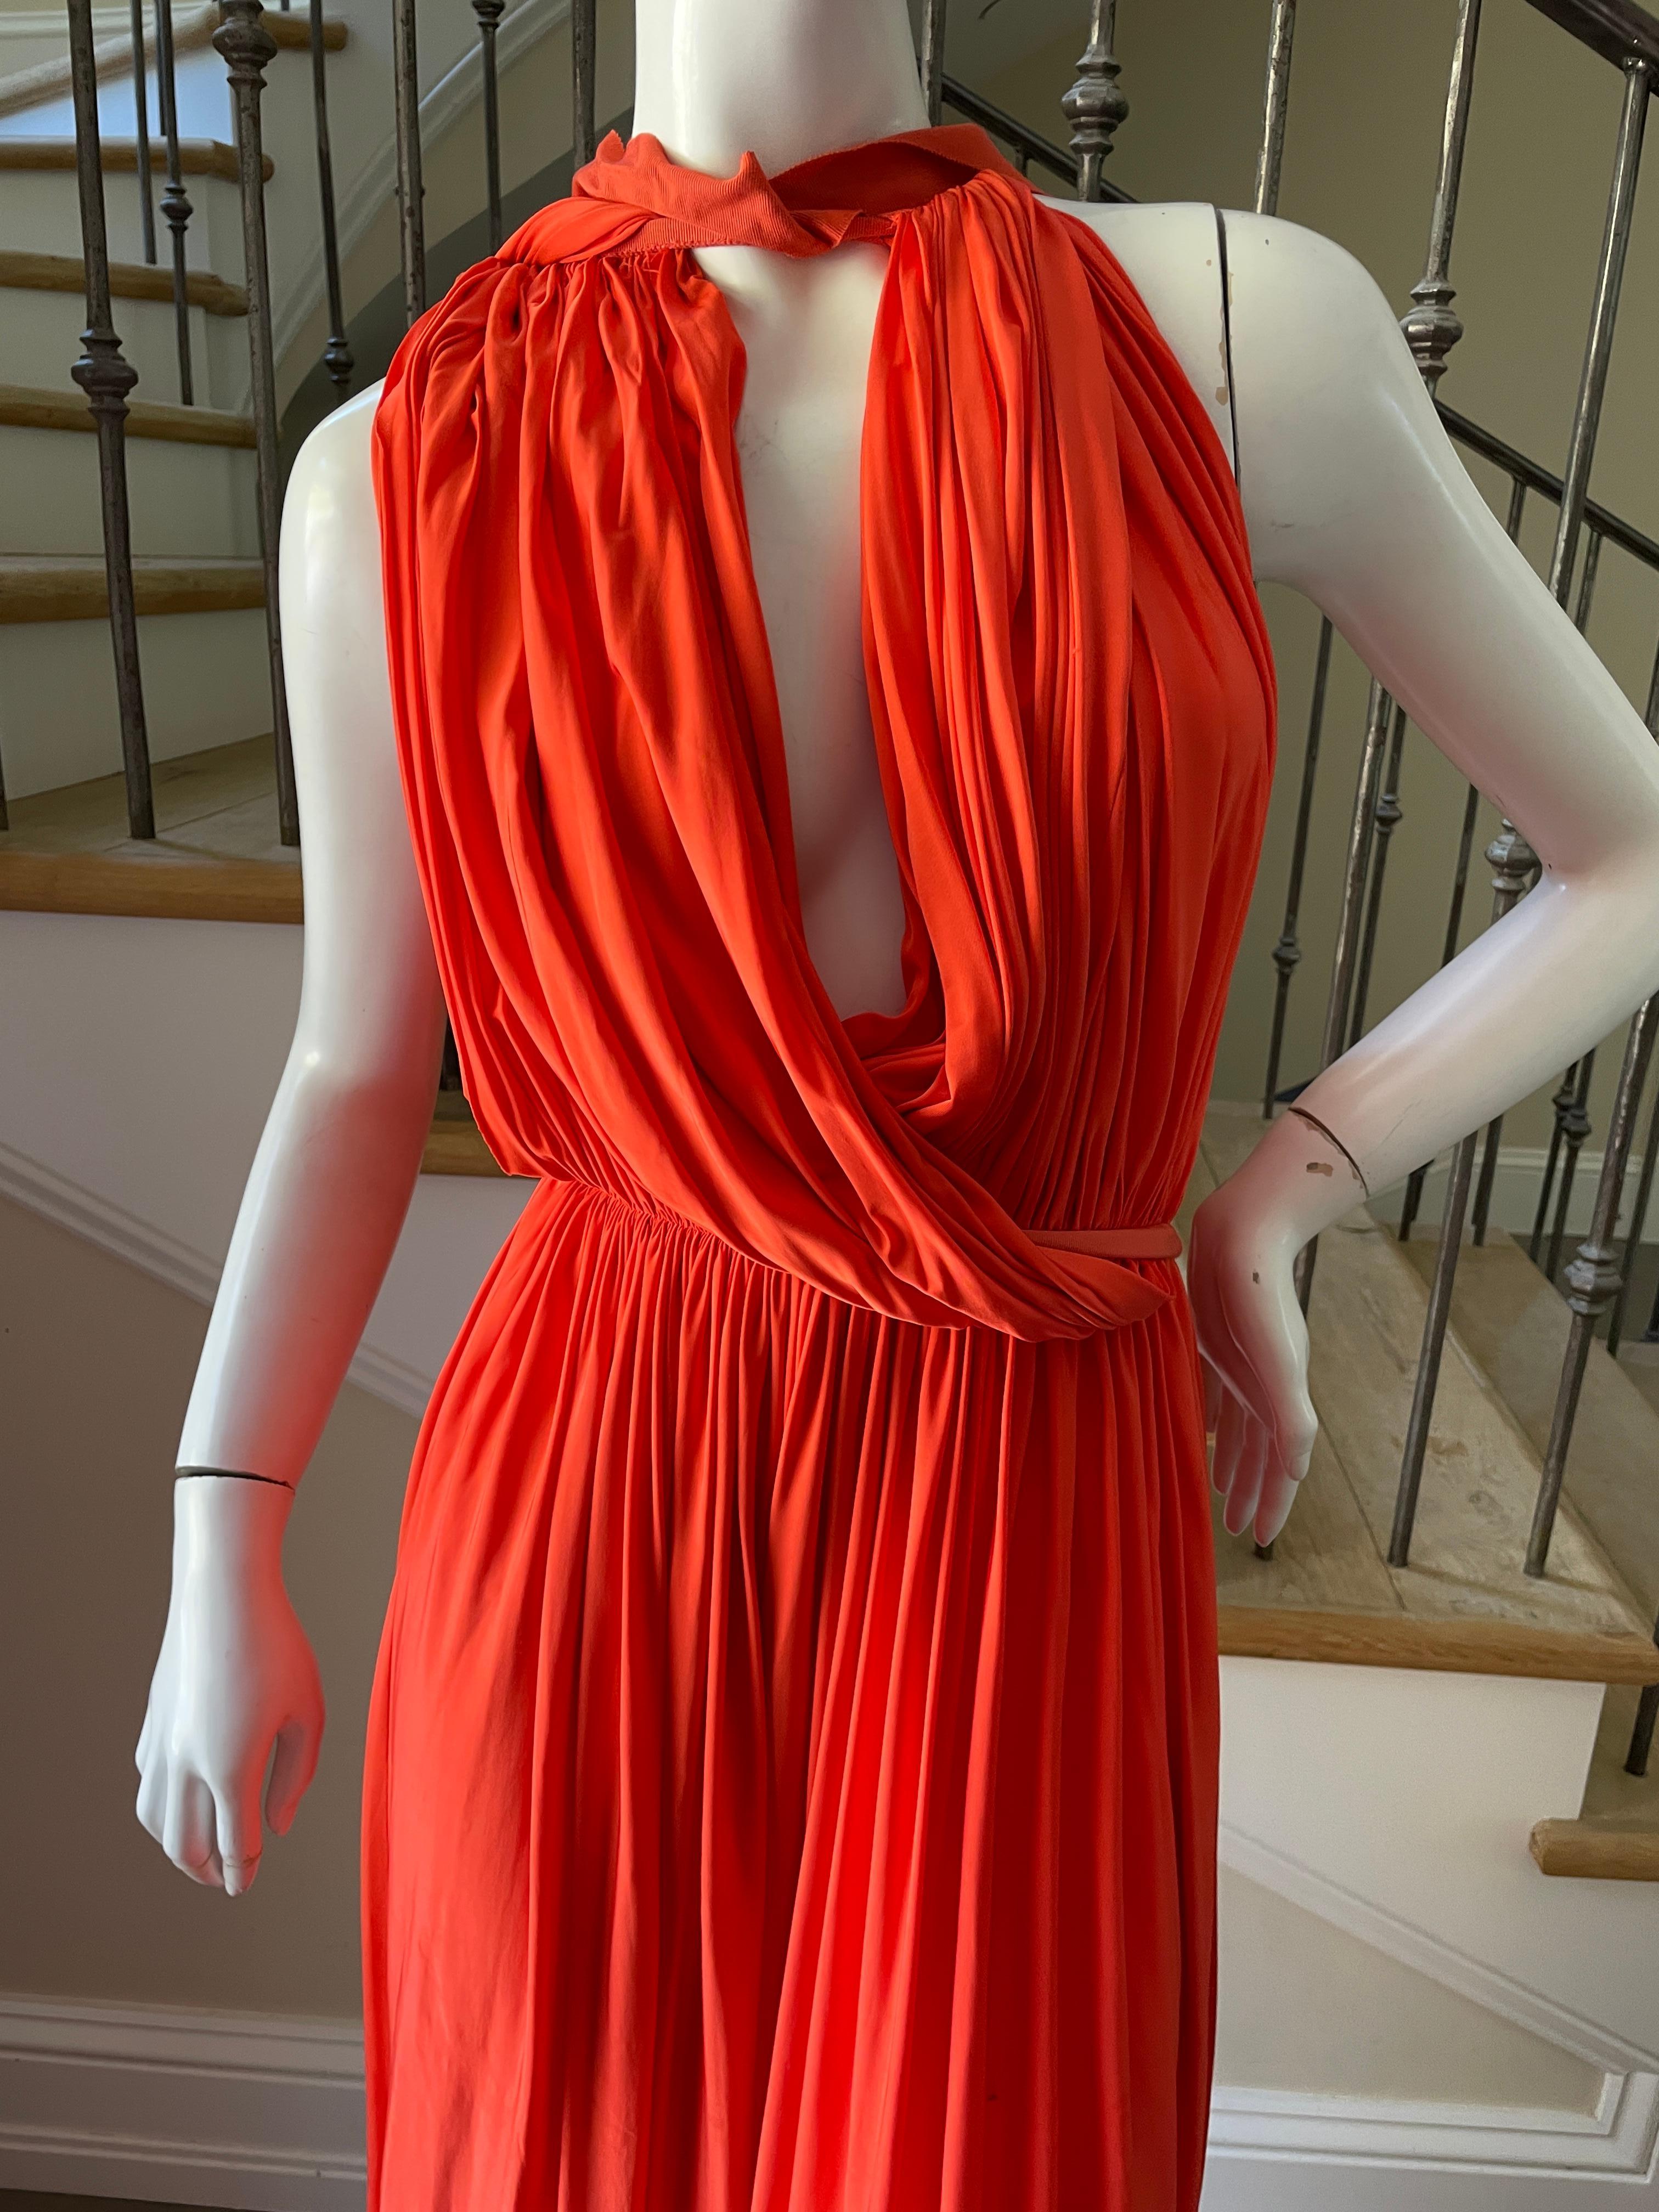 Red Lanvin by Alber Elbaz Resort 2014 Orange Goddess Gown